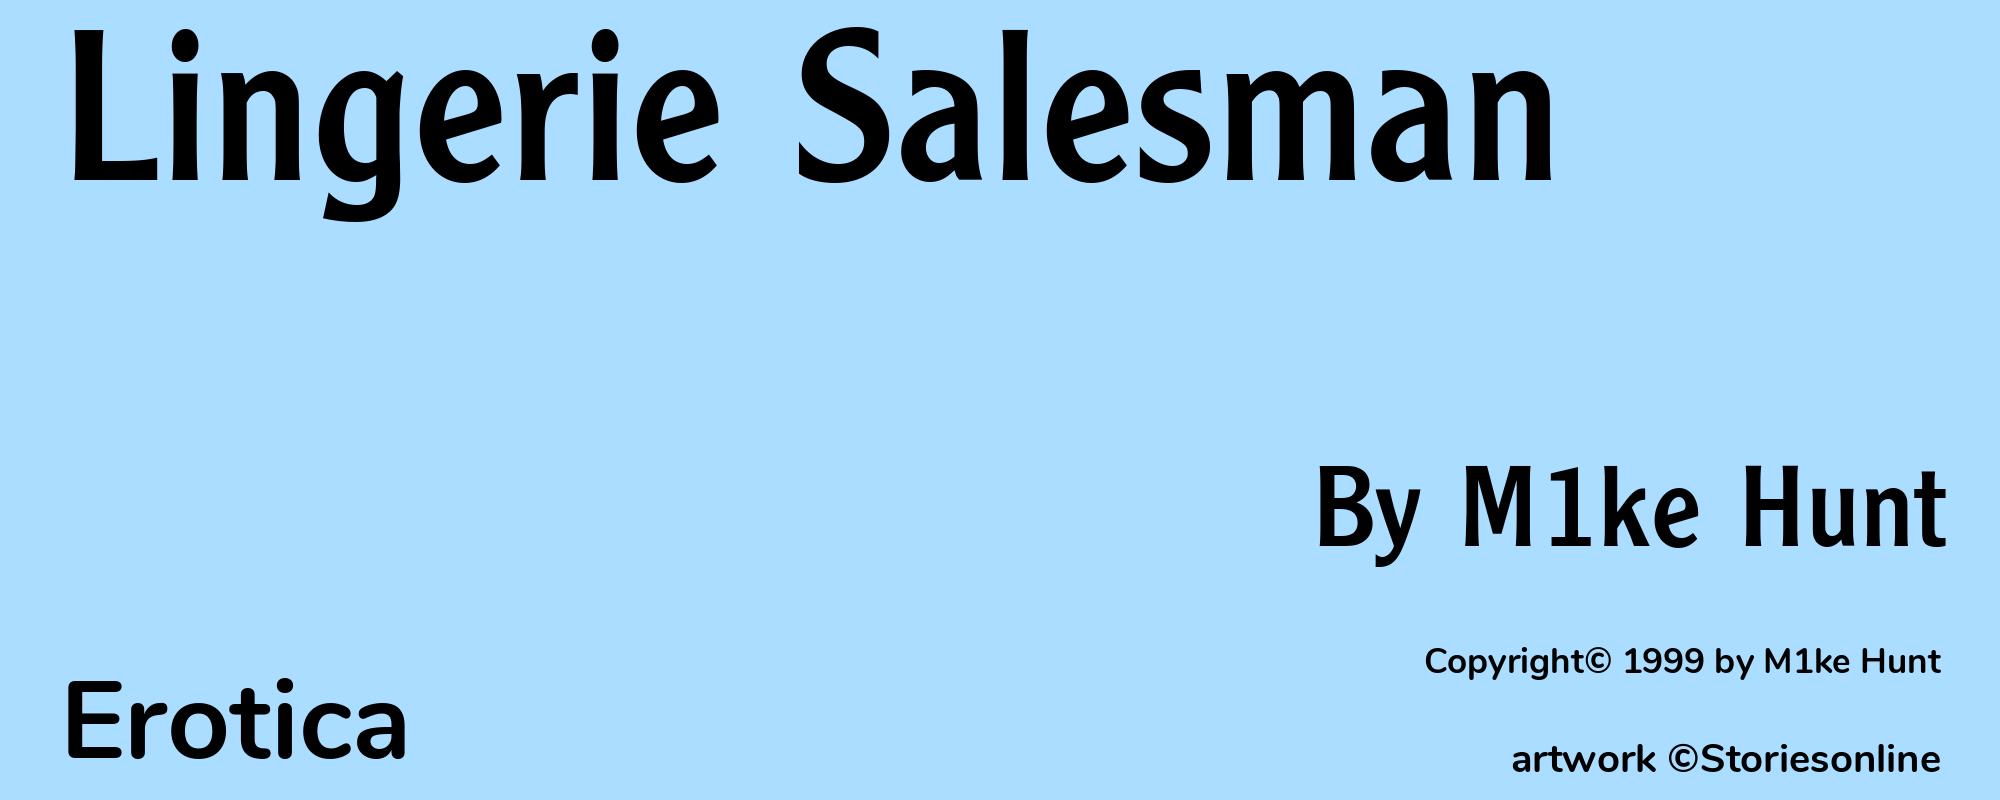 Lingerie Salesman - Cover